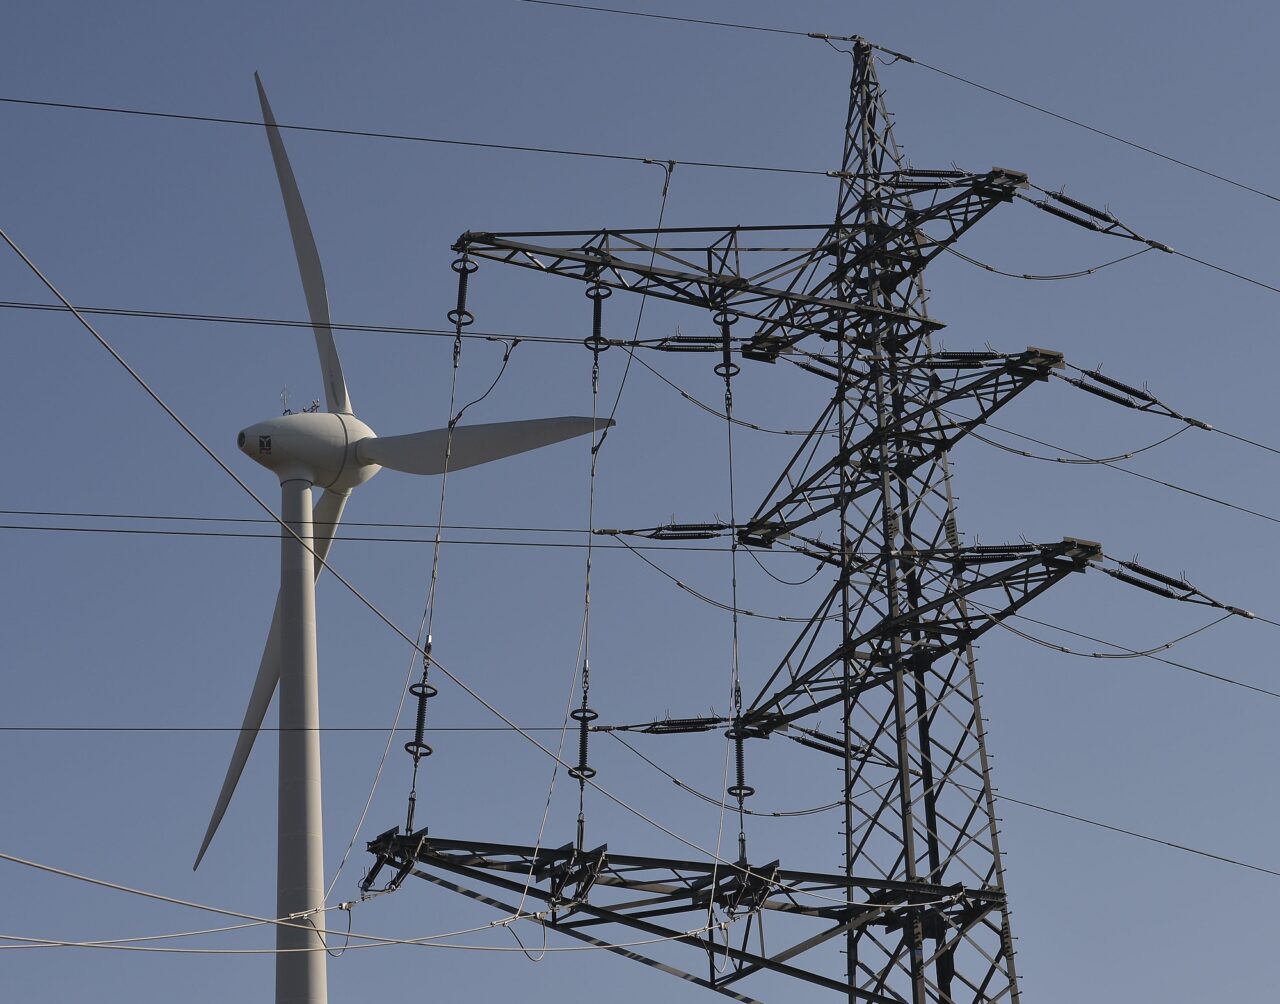 Ε.Ε: Συμφωνία για λήψη ενεργειακού  ποσοστού 42,5% από τις ανανεώσιμες πηγές μέχρι το 2030